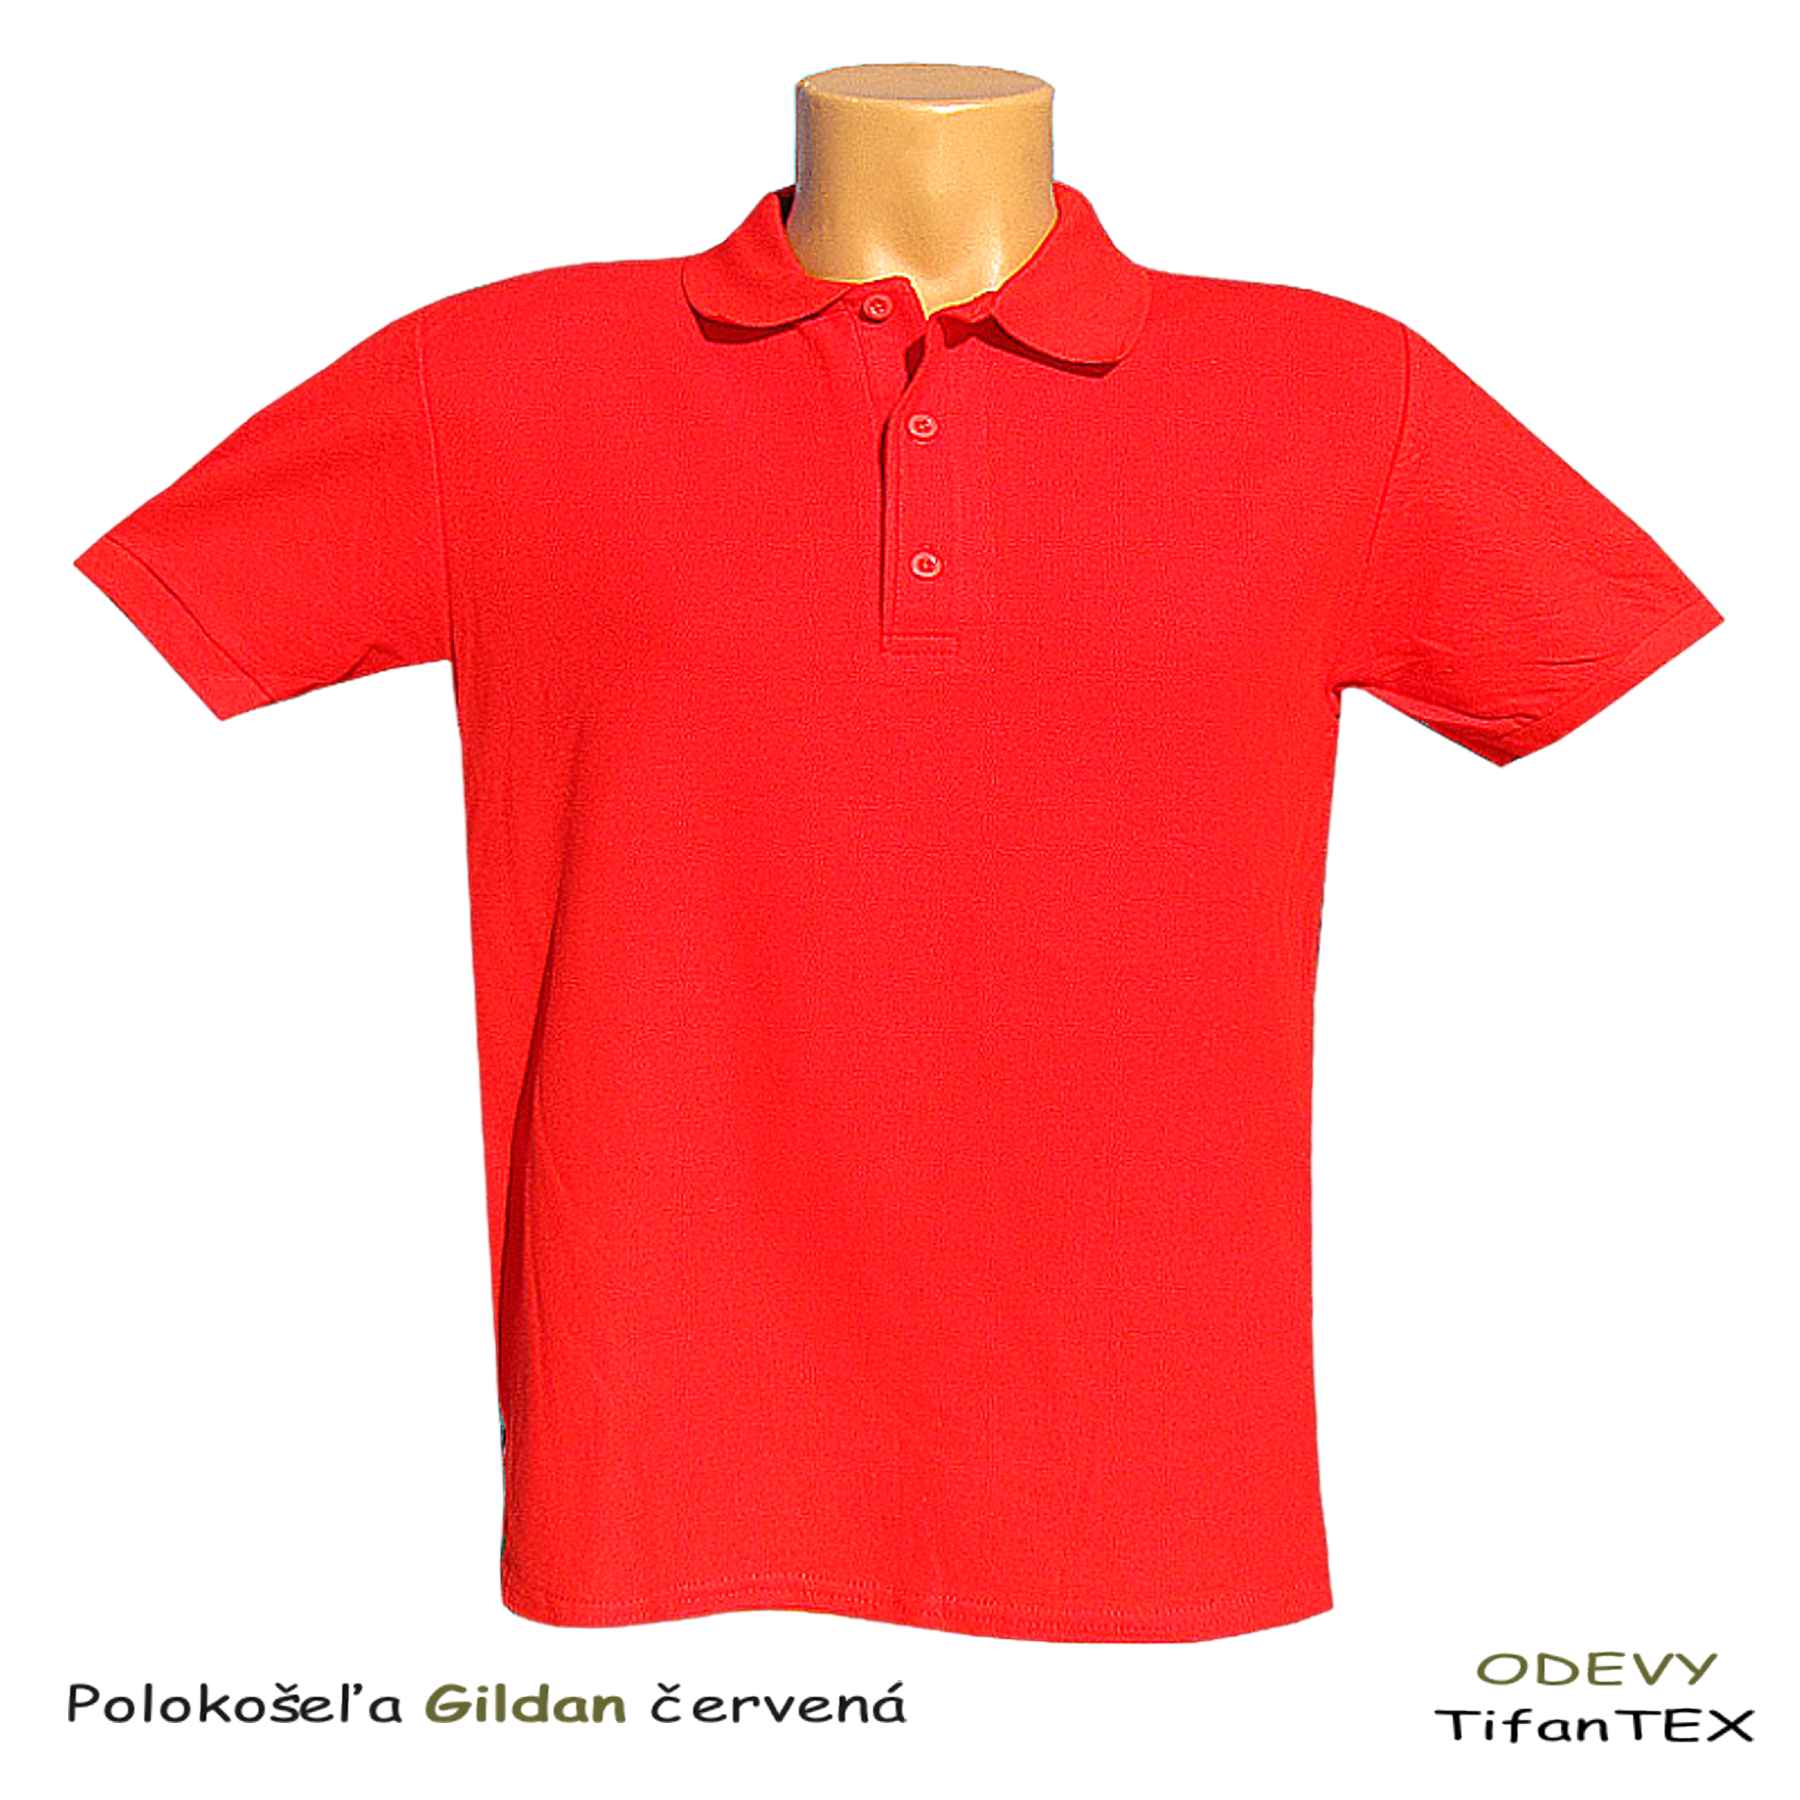 Bavlnené polokošeľa pánska Gildan červená, pracovné odevy Tifantex